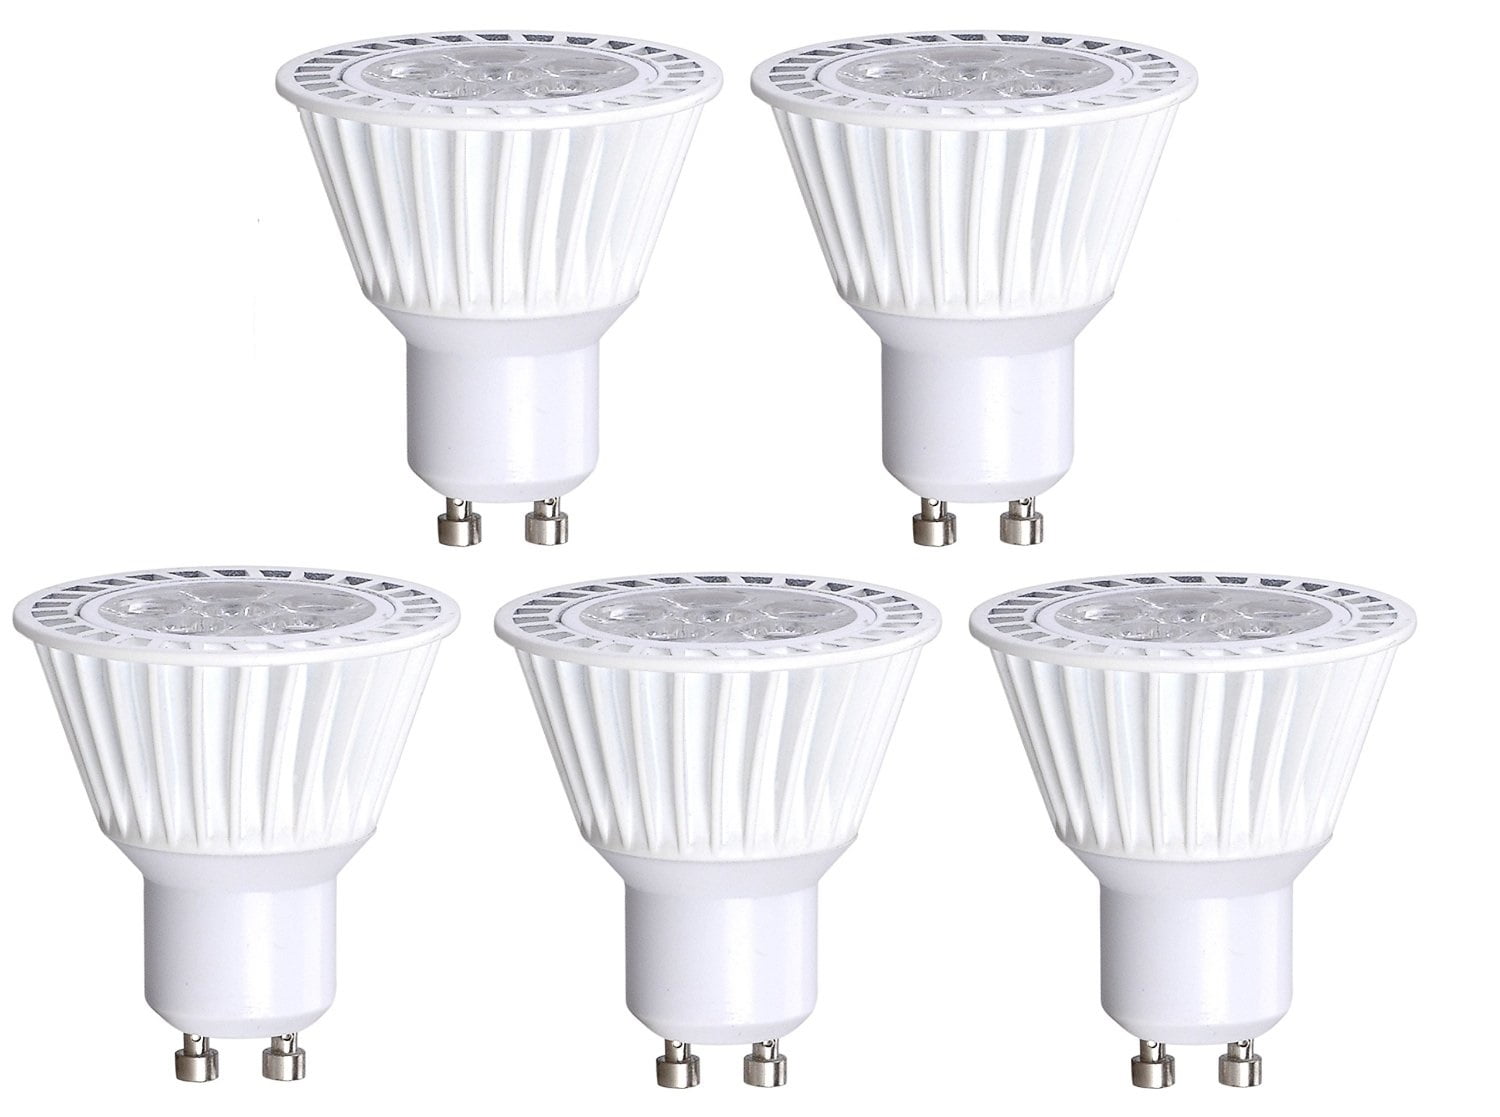 50 x Spot Light Energy Saving Bulbs Cool White 4500k Bulk Buy 3w LED GU10 Lamps 